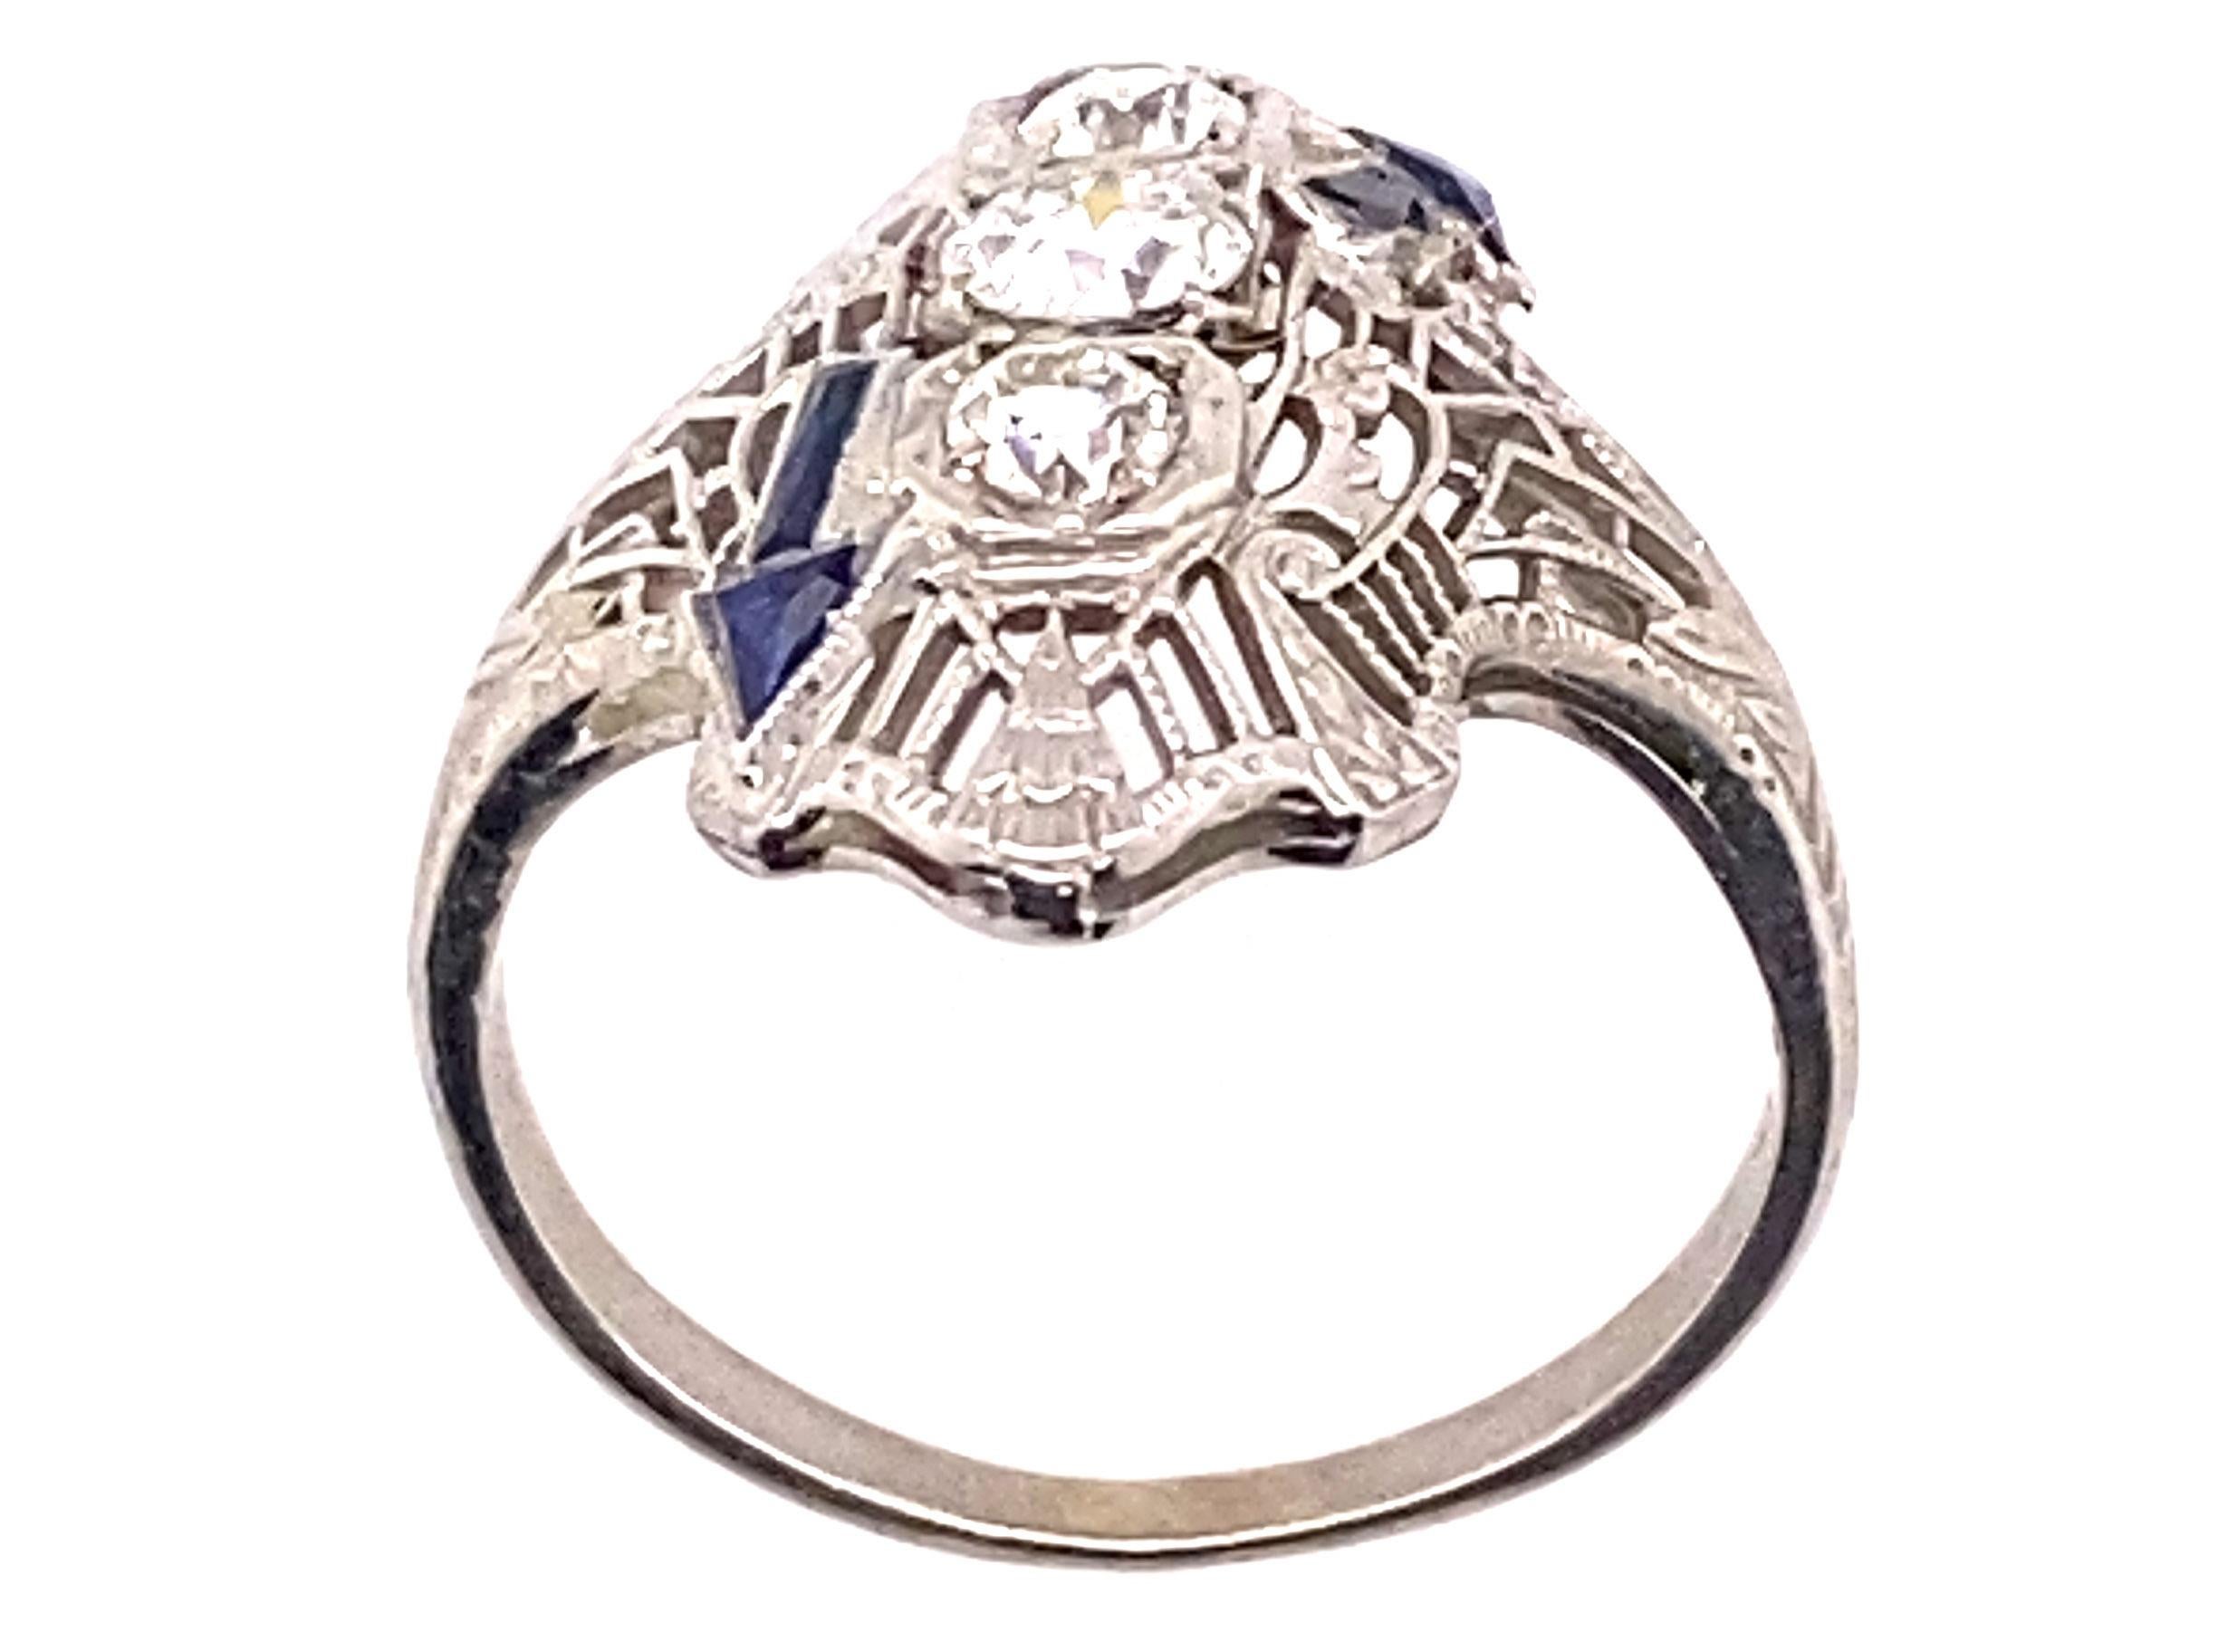 Véritable Original Antiques des années 1930 3 Stone .81ct Diamond French Cut Sapphire 18K Art Deco Engagement Cocktail Ring


Avec 3 SPECTACULAIRES diamants centraux de taille européenne naturels et minés. 

Ces véritables diamants européens sont